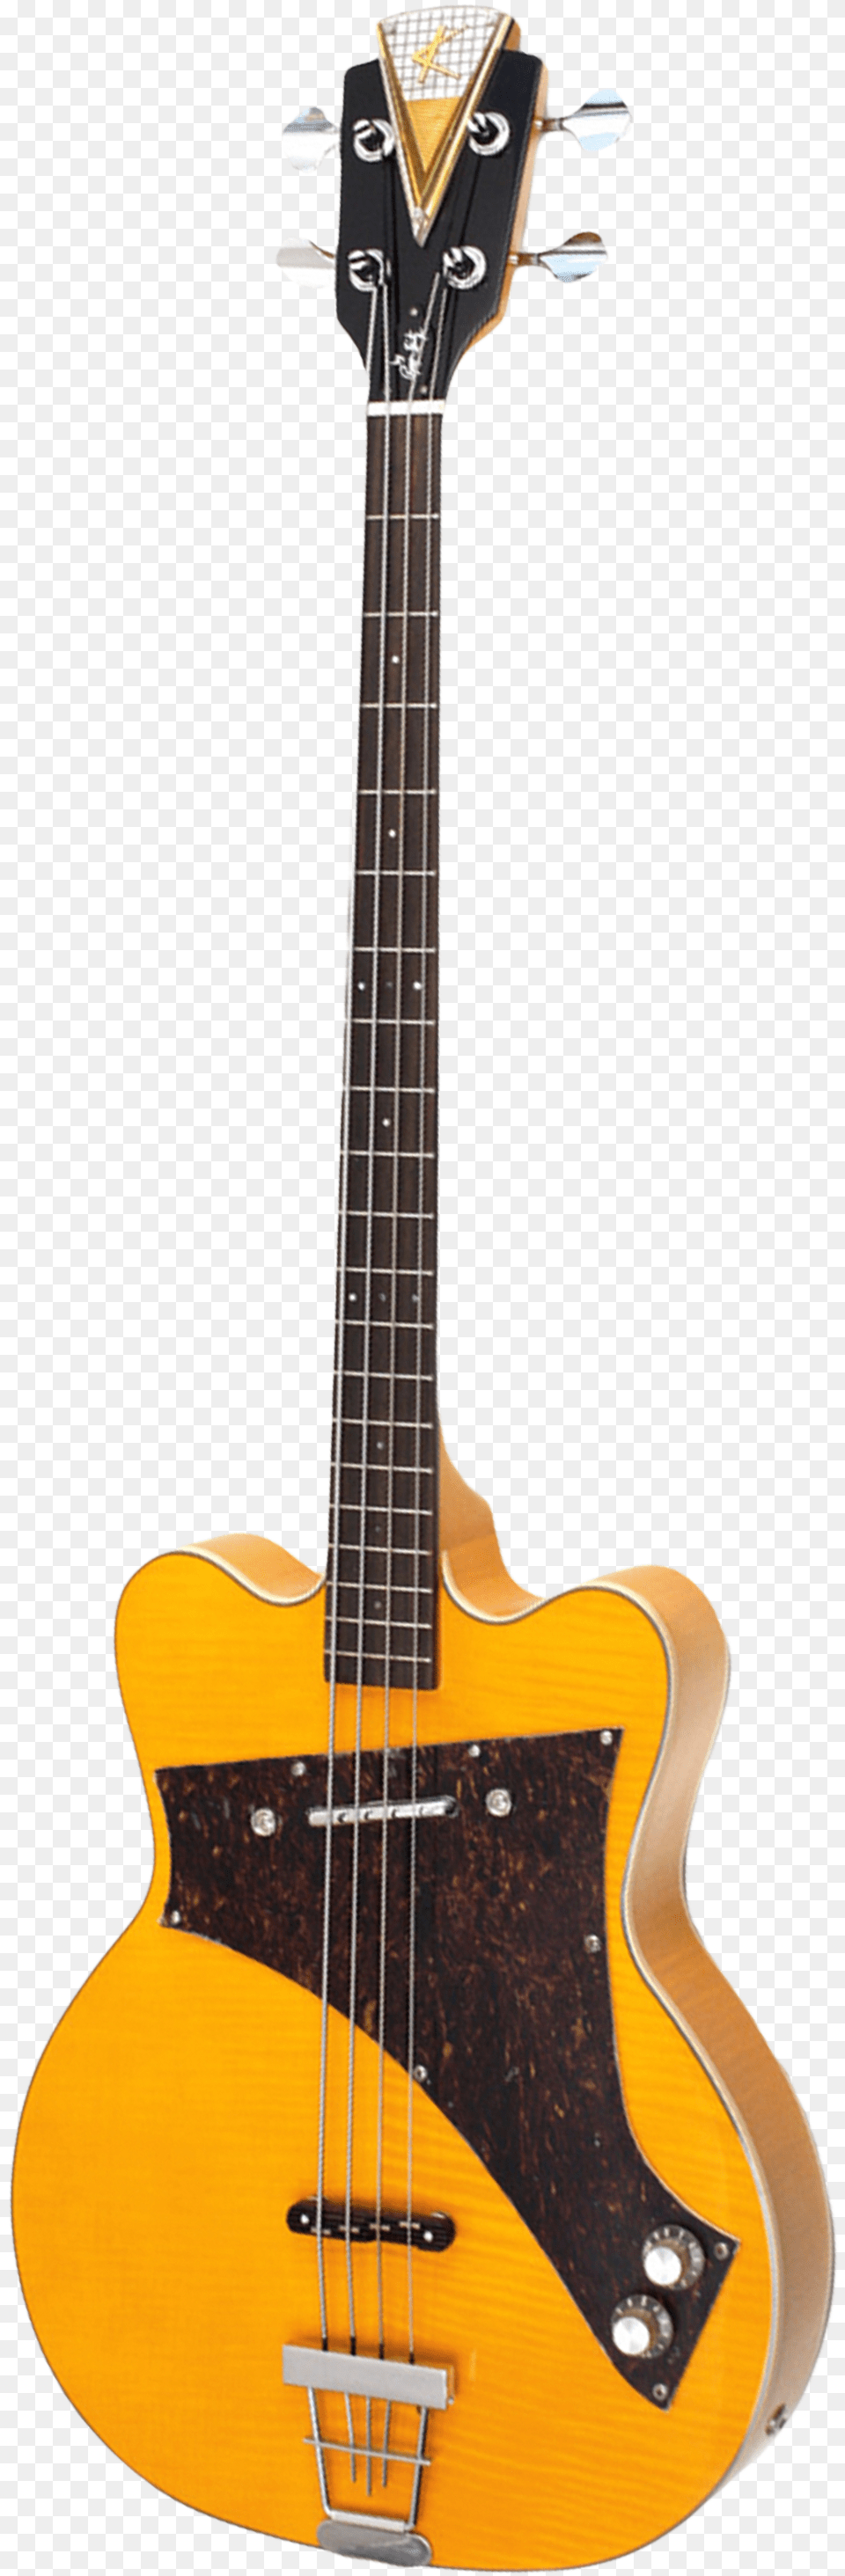 Bass, Bass Guitar, Guitar, Musical Instrument Png